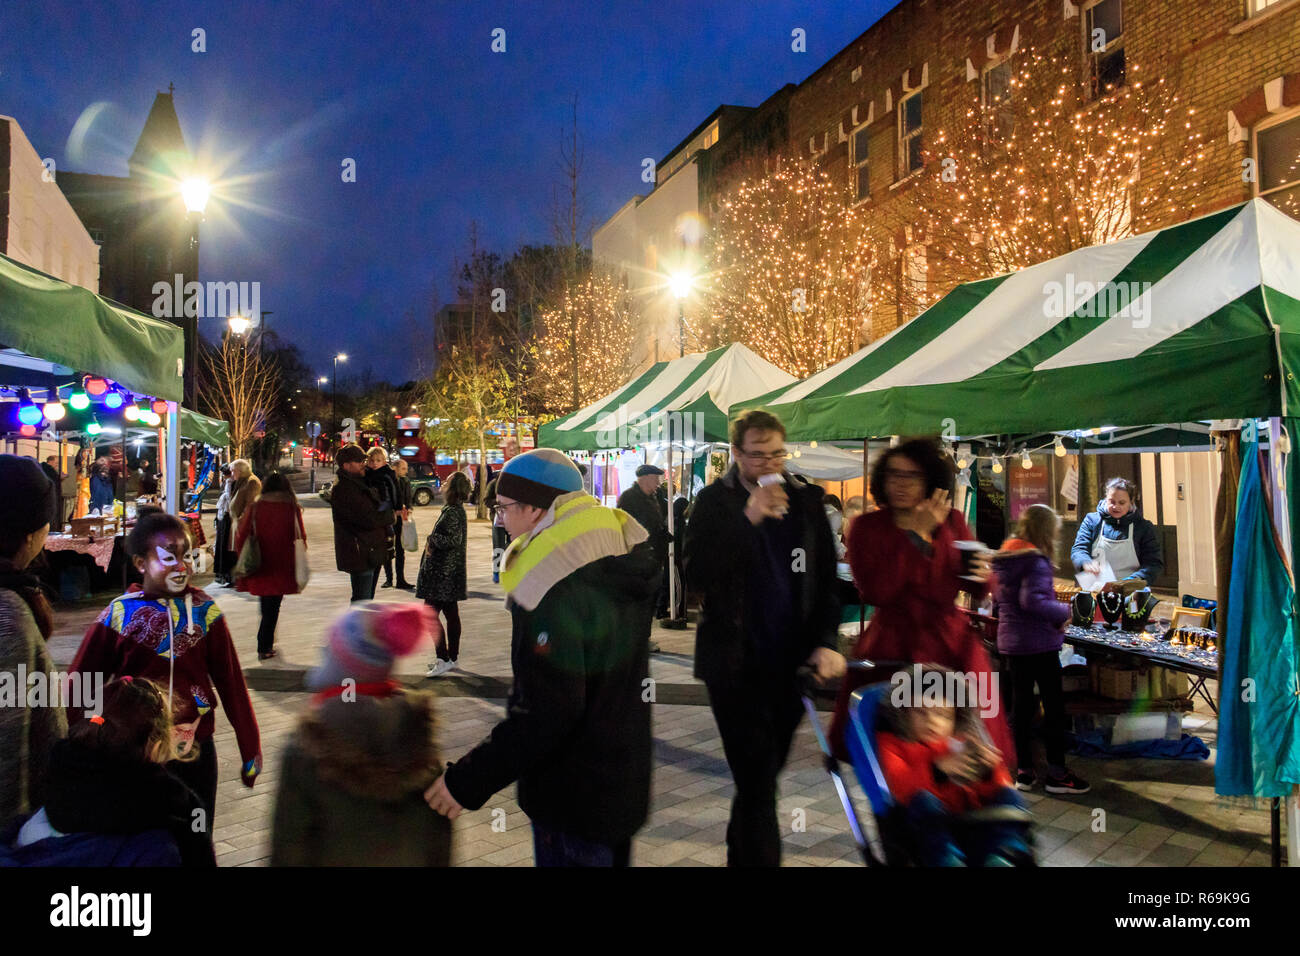 Notte tempo colpo di persone che passeggiano attraverso un mercato all'aperto illuminato con luci di Natale, Navigator Square, Archway, London, Regno Unito Foto Stock